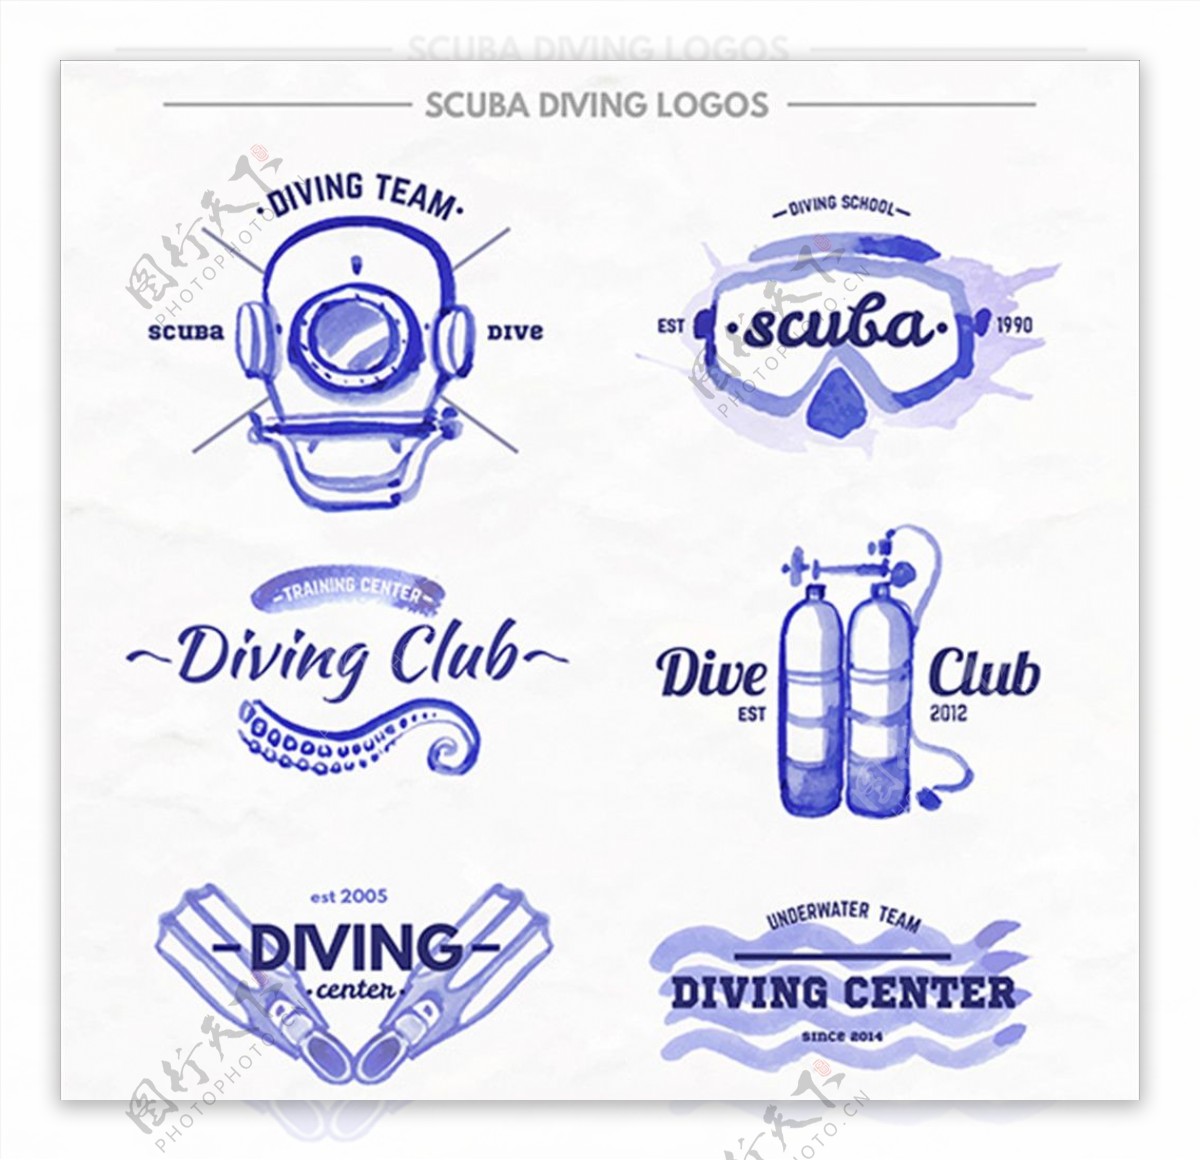 潜水运动培训俱乐部标志LOGO